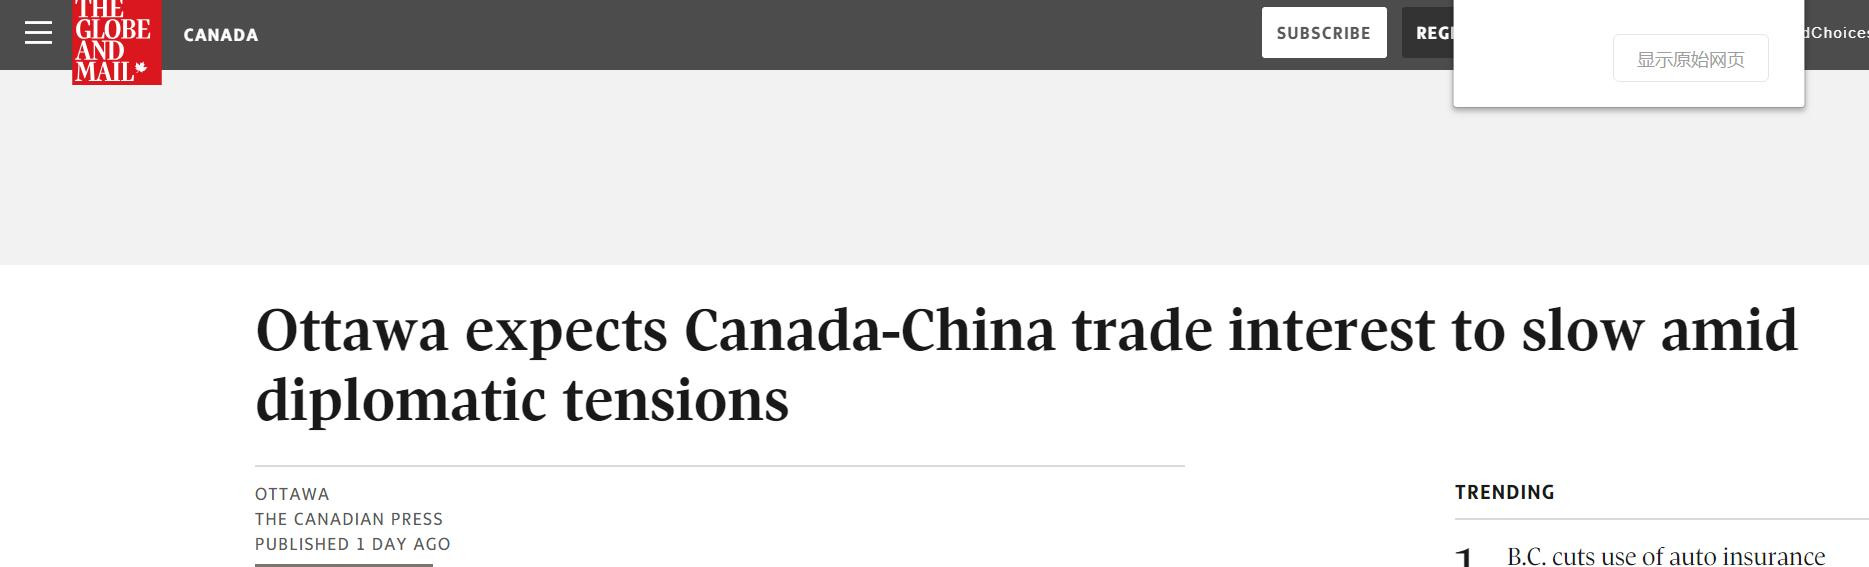 跟随美国针对华为，加拿大经济再次出现萎靡！如今“示好”中国？